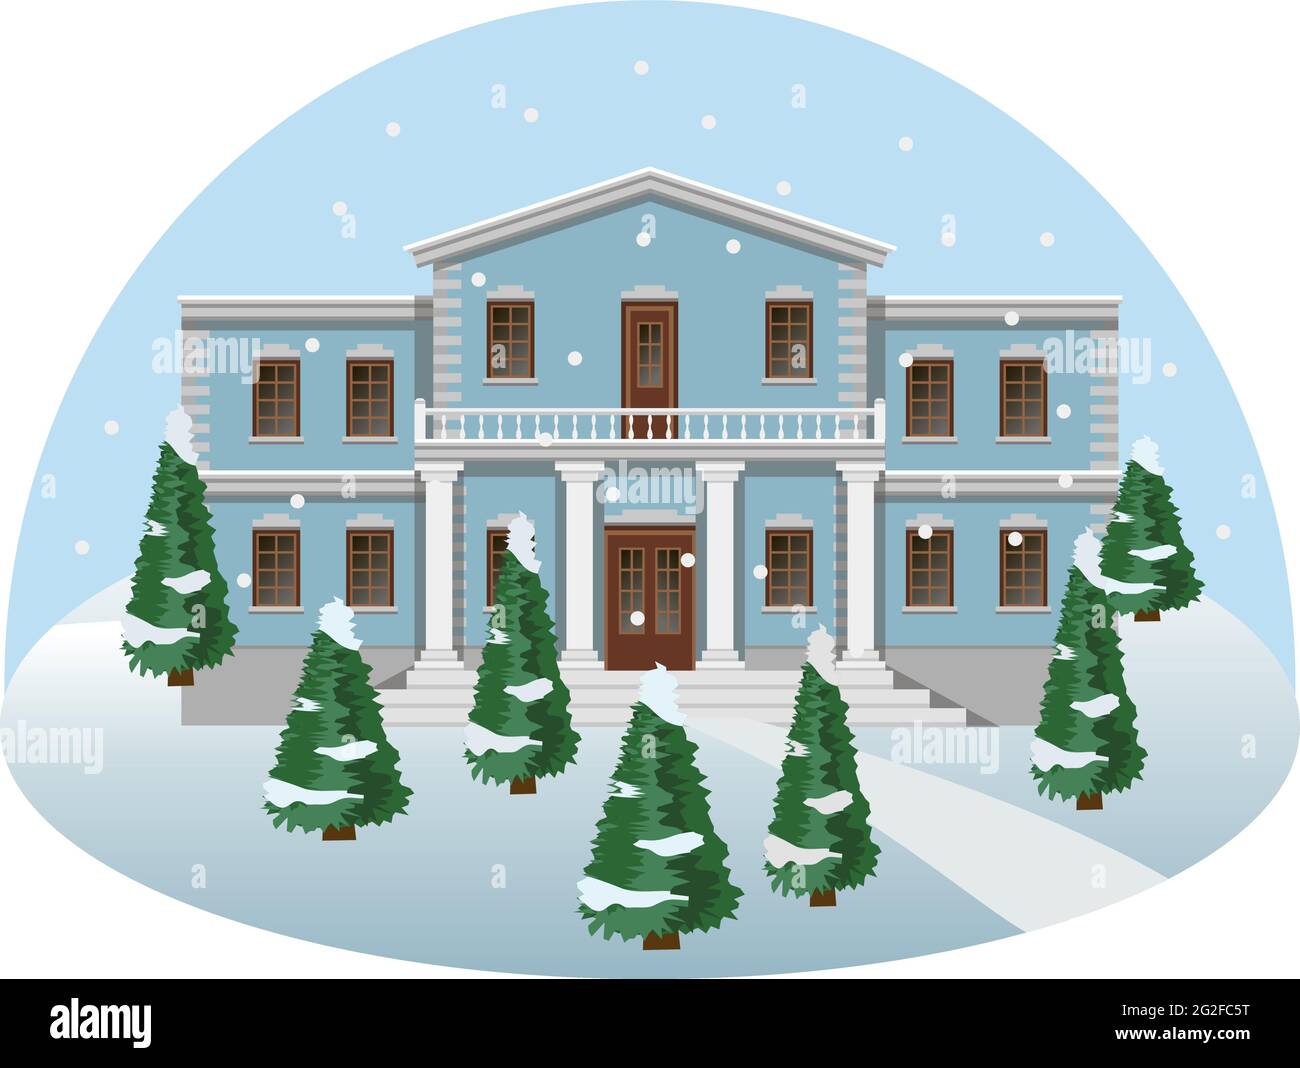 Herrenhaus in Winterlandschaft, Vorderansicht. Cartoon bunte Szene mit Herrenhaus und Bäumen im Schnee. Vektorgrafik Stock Vektor